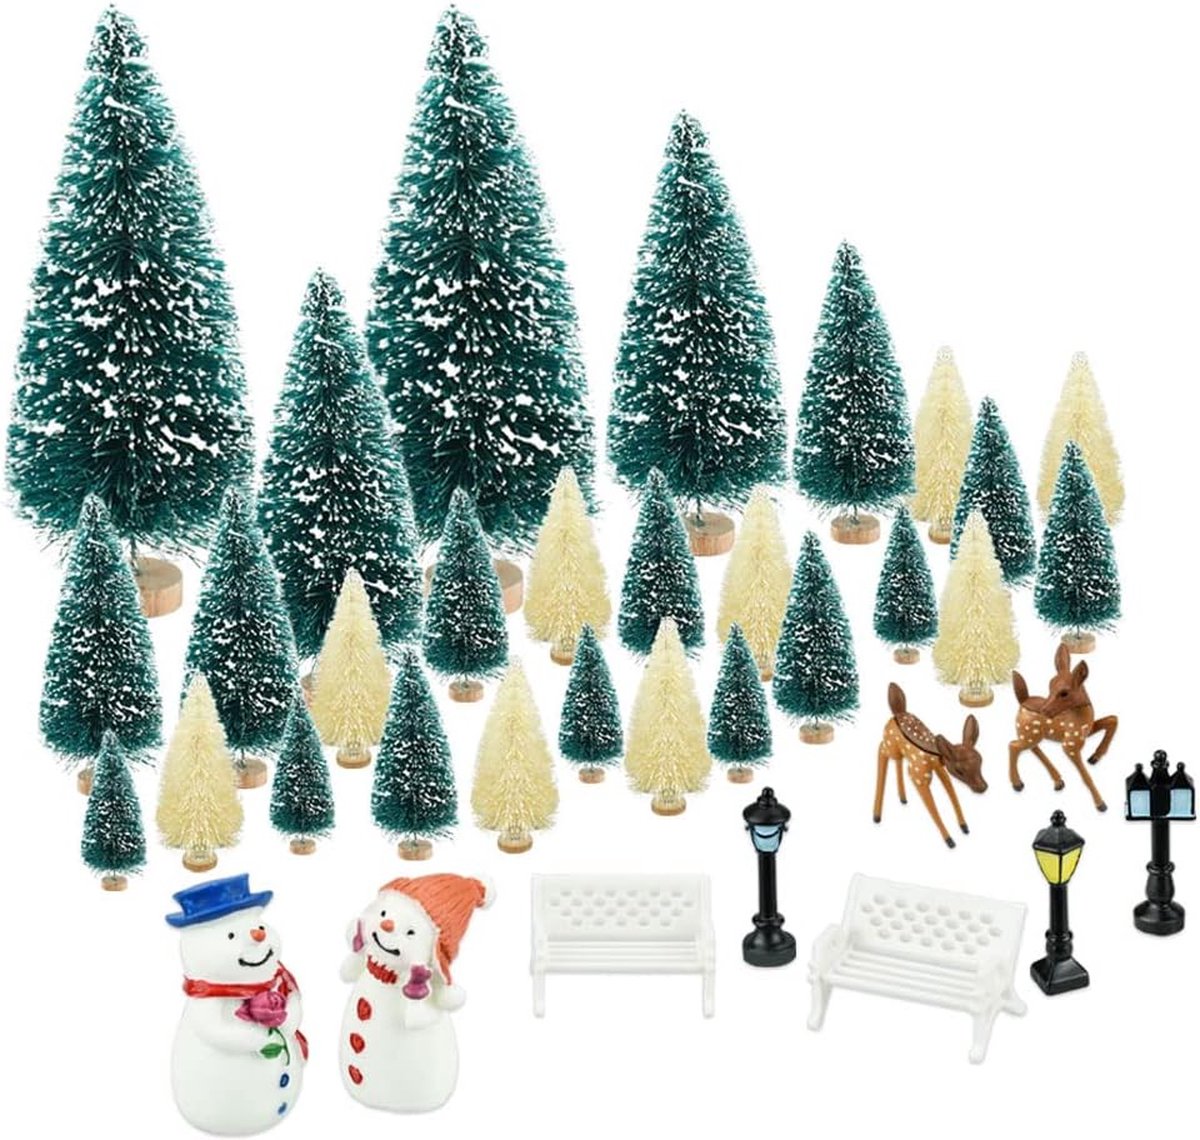 Kerstmis mini model ornamenten 36 stuks Xmas stijl miniatuur ornamenten kits kleine dennenboom kerstfiguren decoratie ornament voor thuis tuin tafeldecoratie etalage